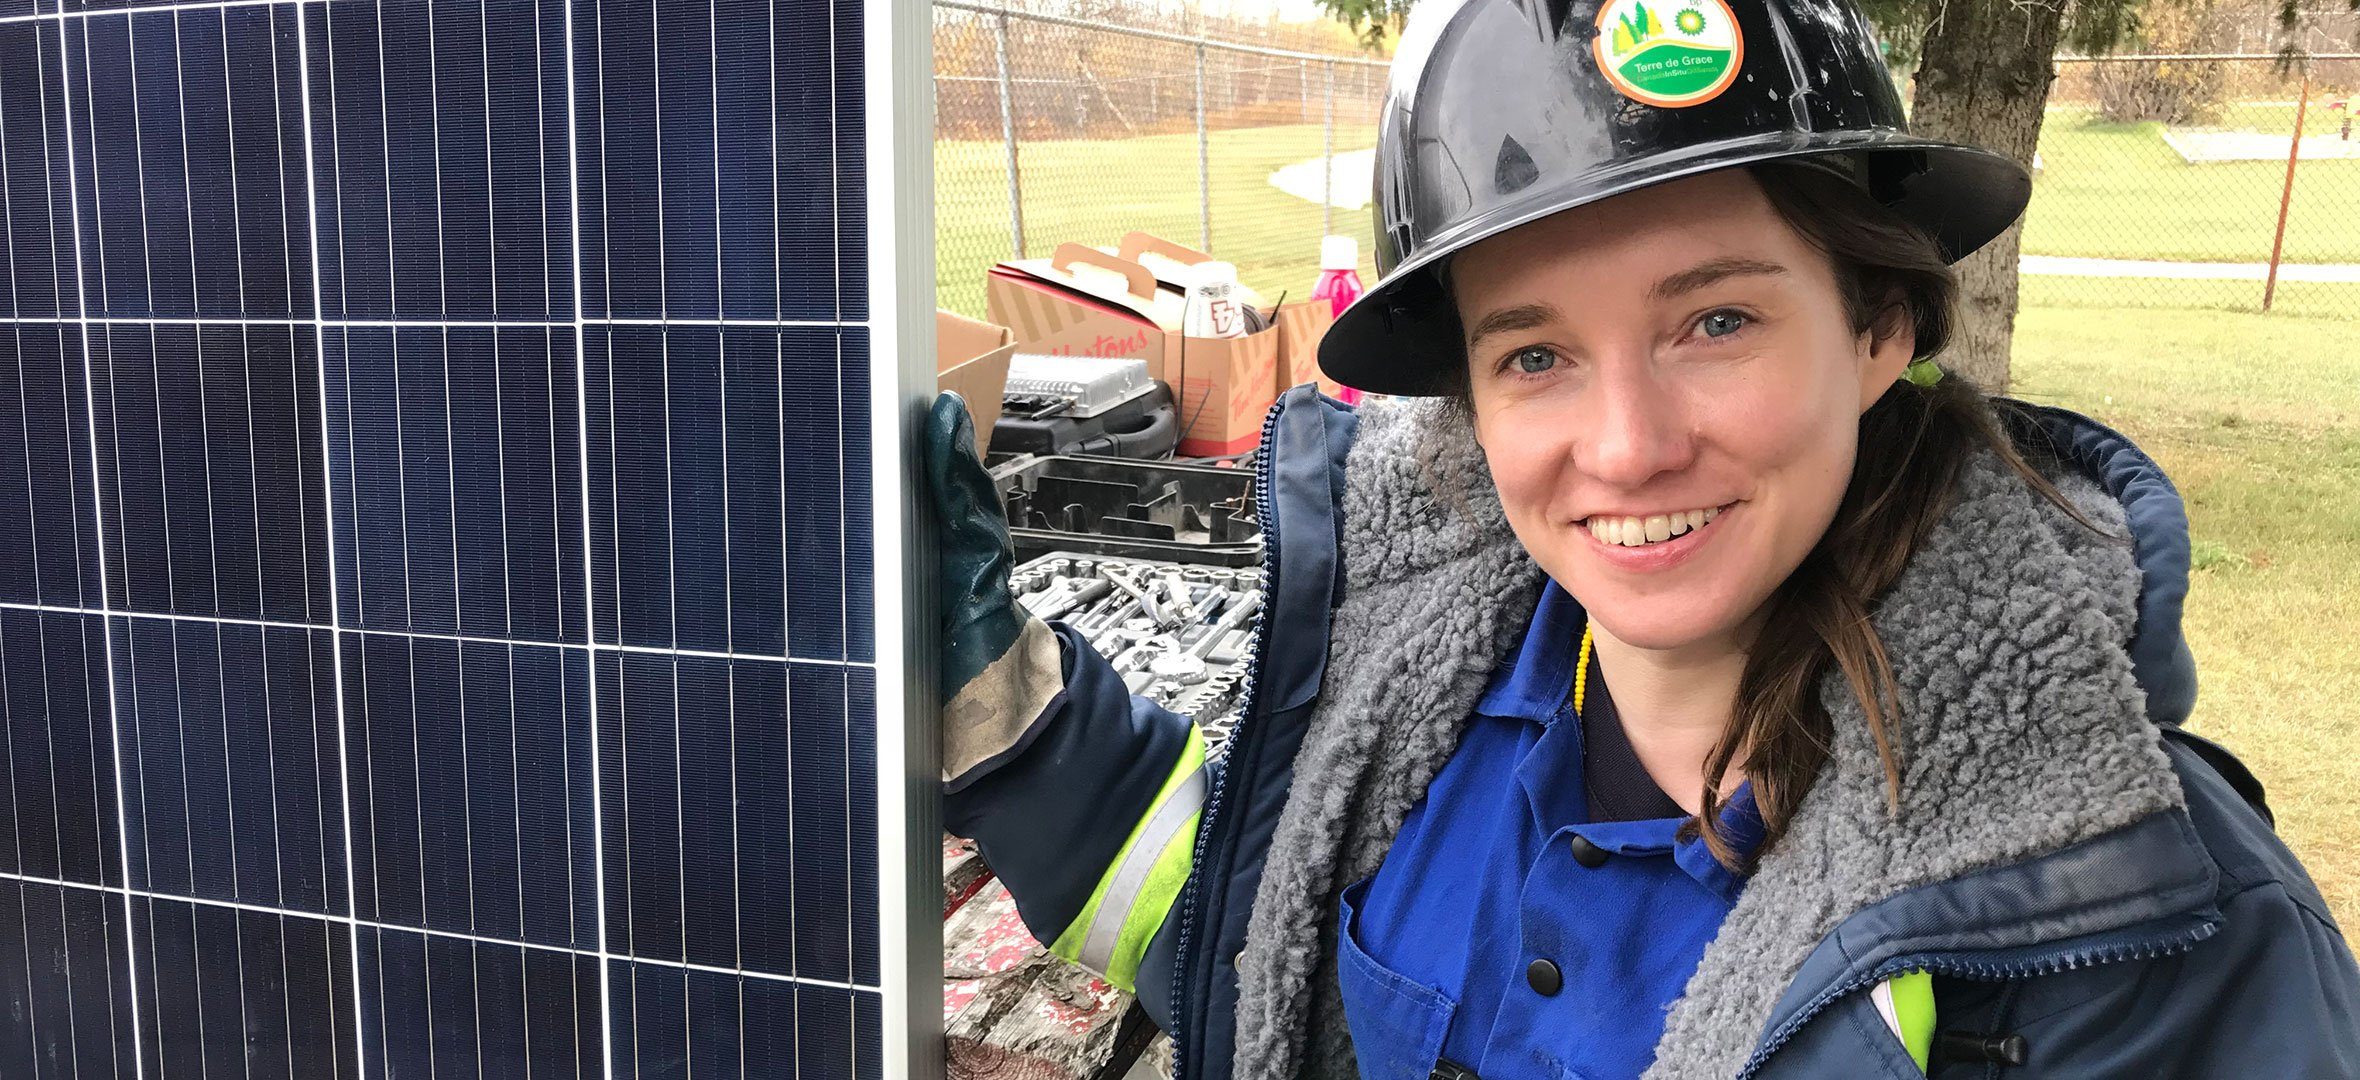 Solar installer Jen Turner